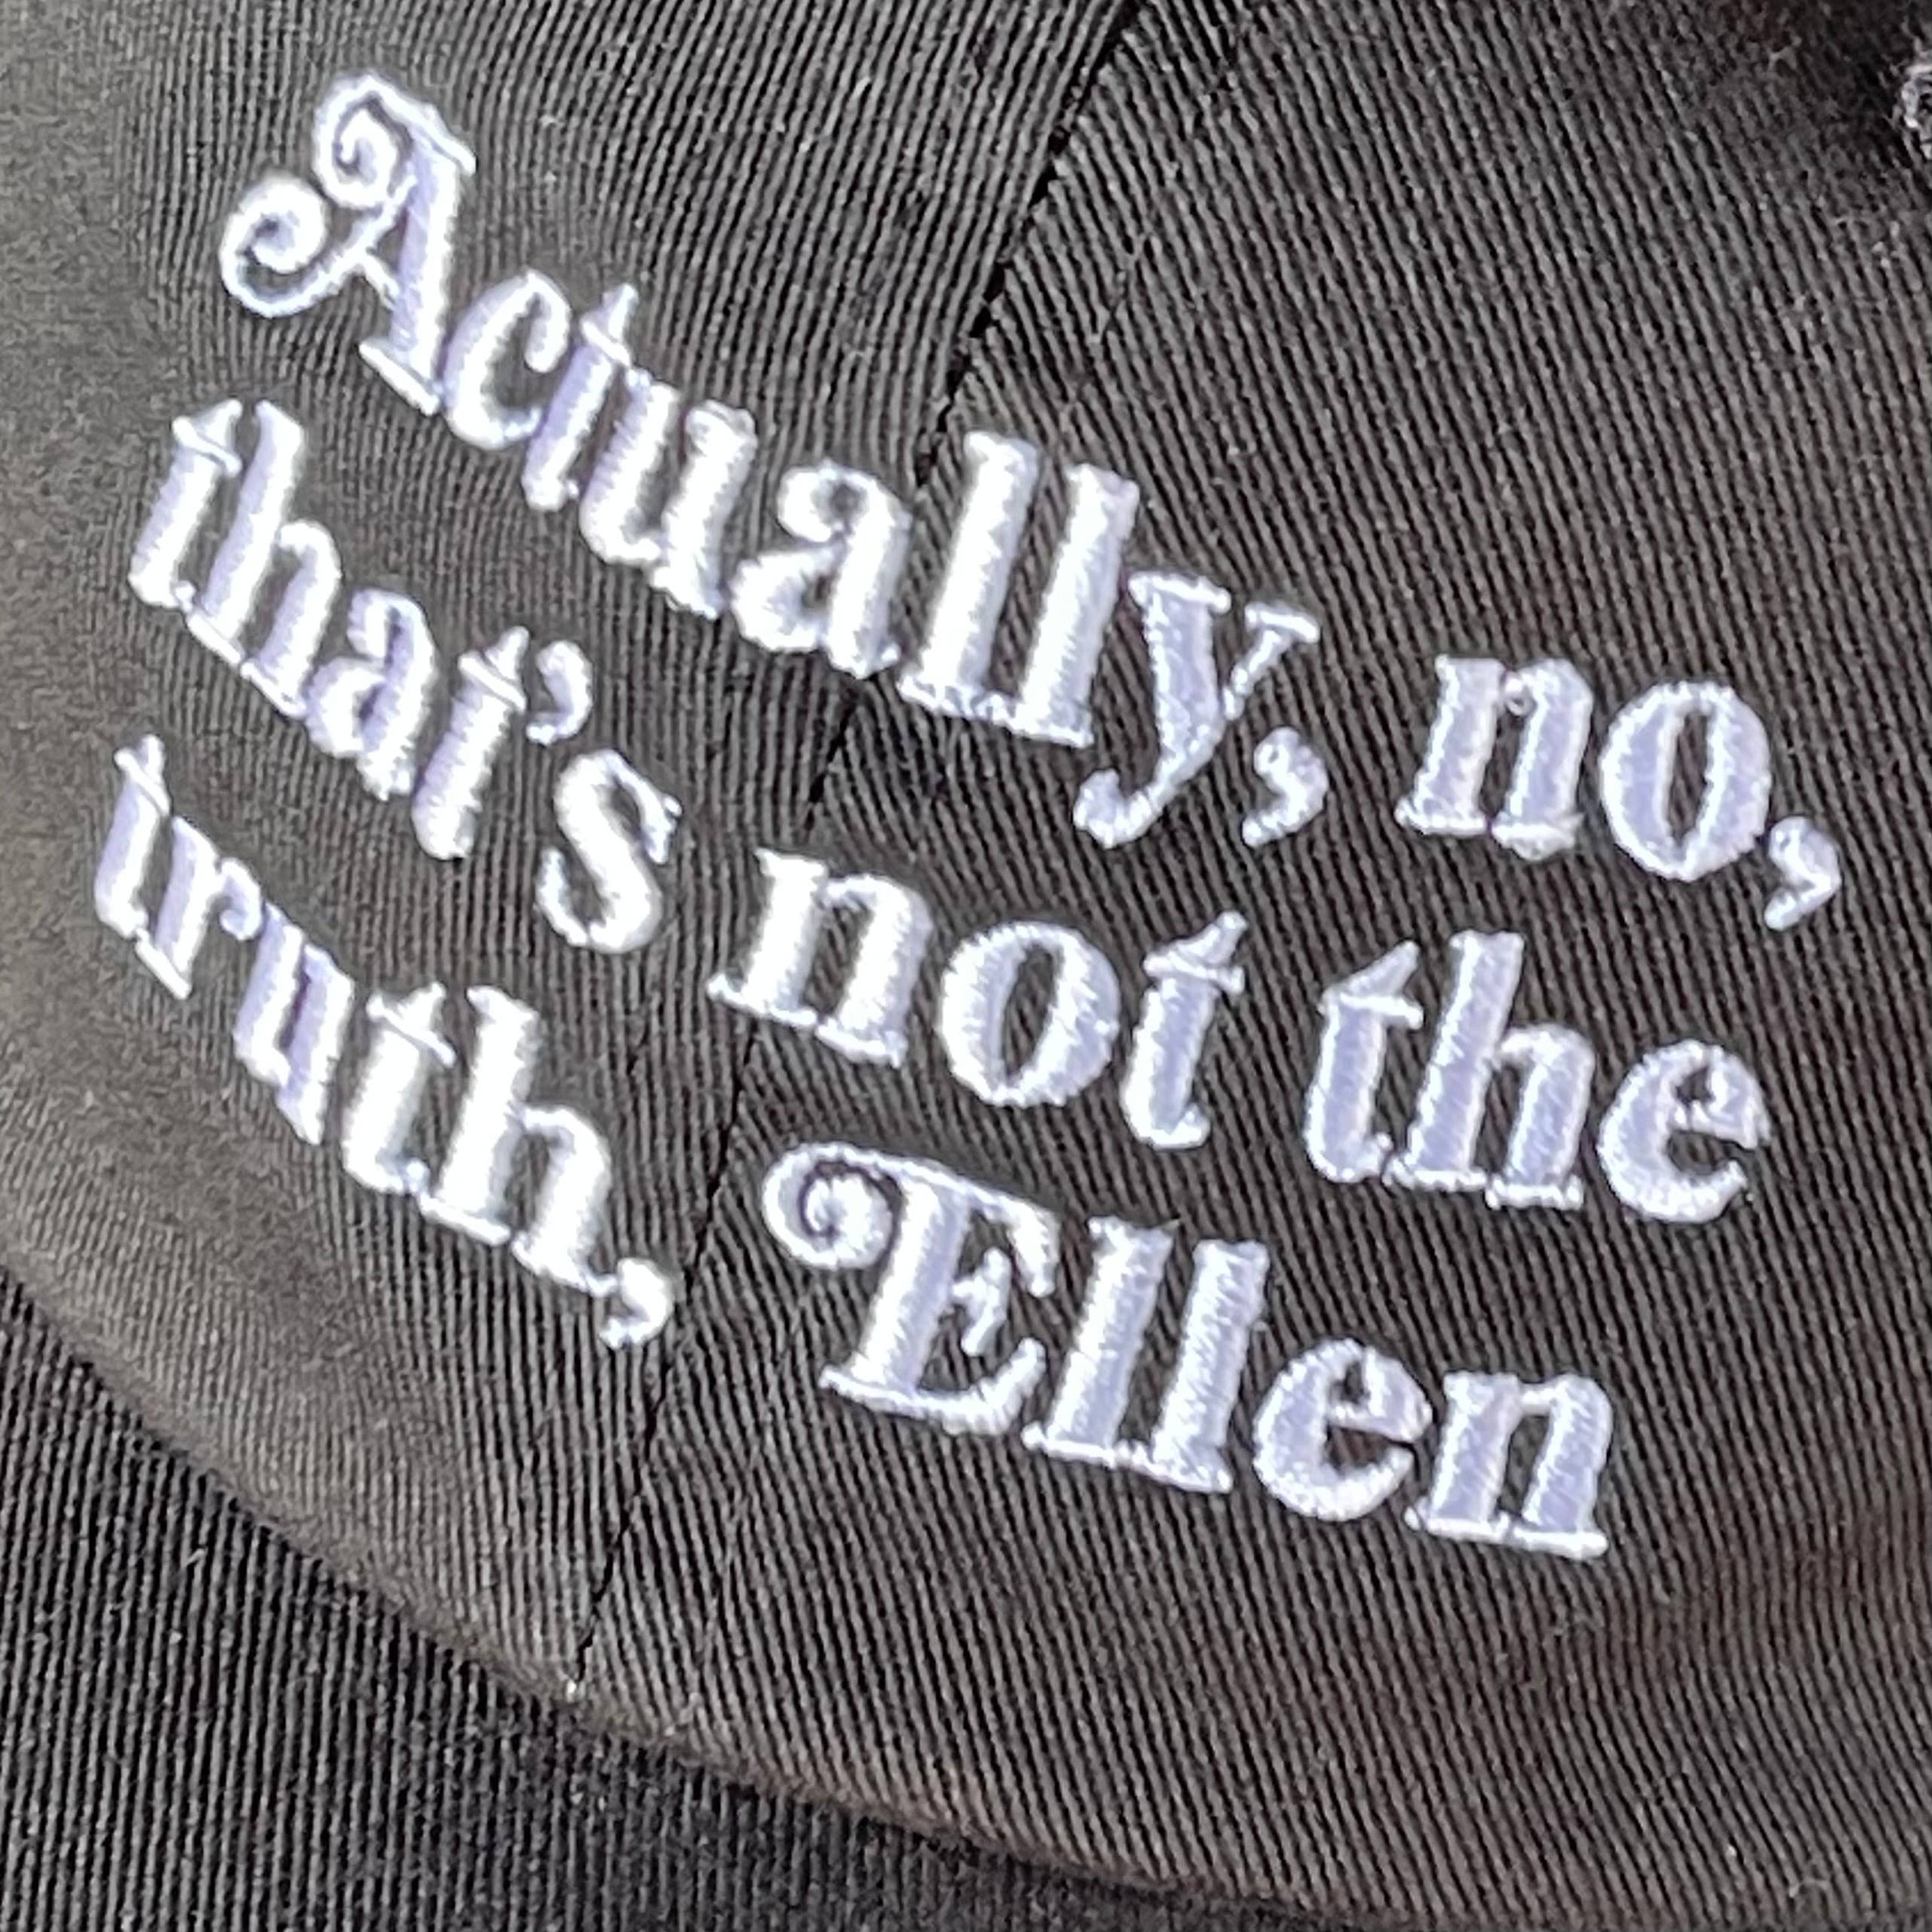 Actually No, that’s not the Truth, Ellen Baseball Cap